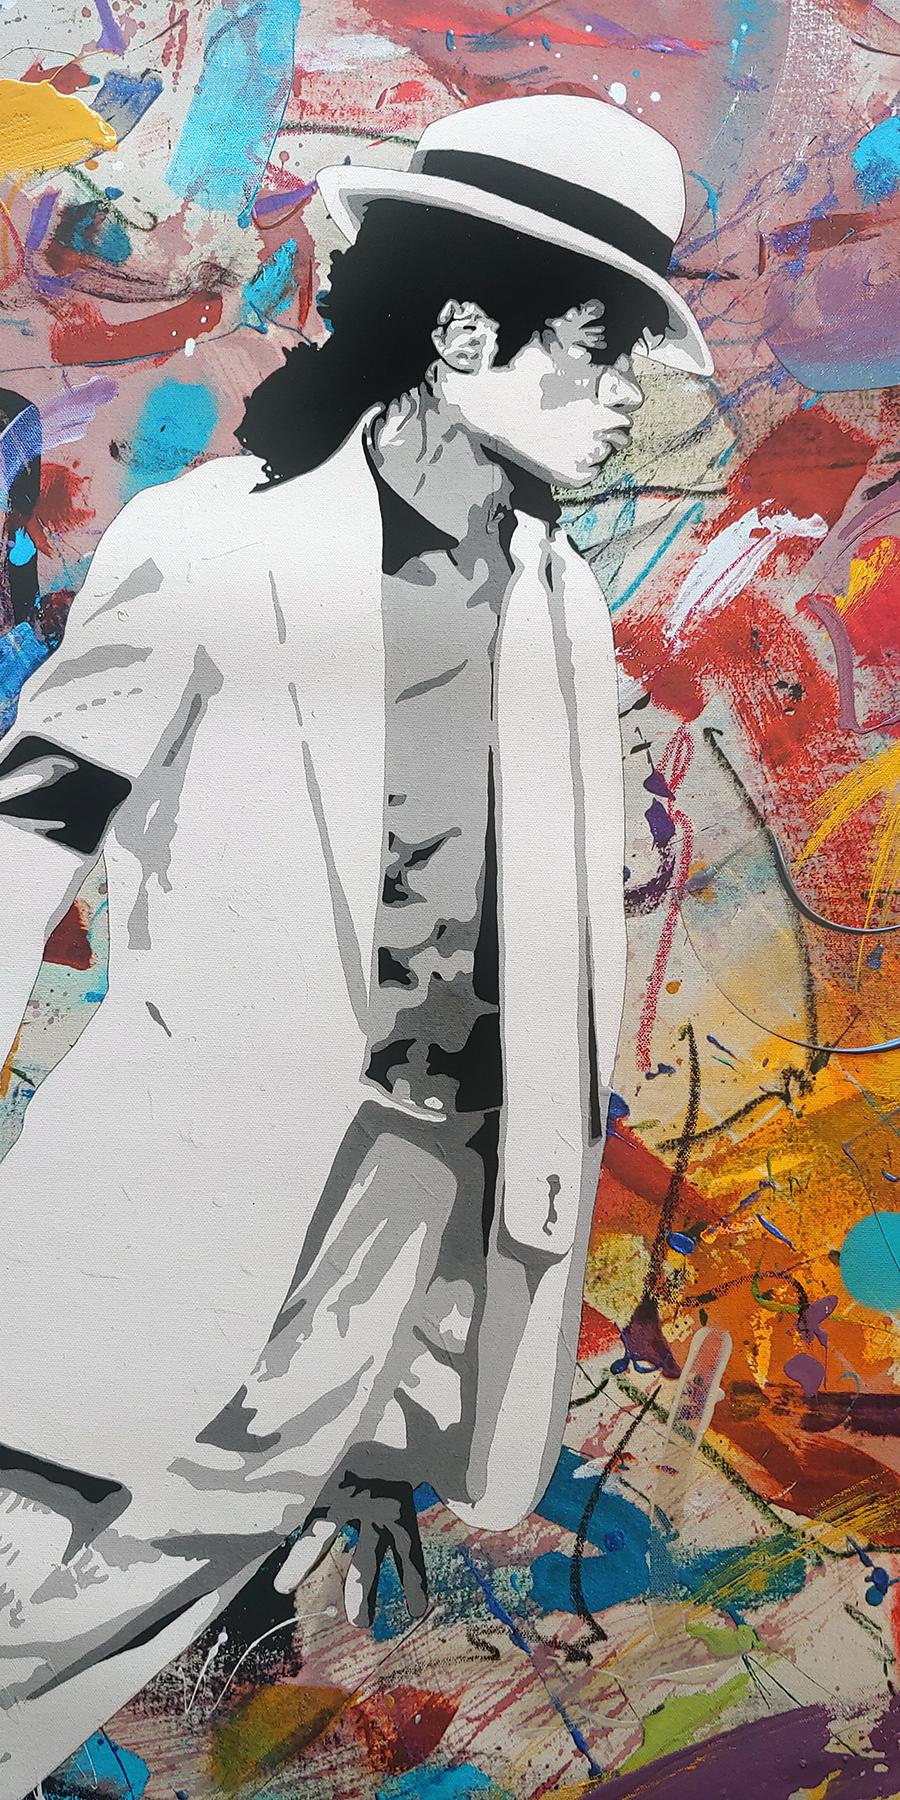 Kings of Pop, Gemälde in Mischtechnik, Acryl, Ölstift-Sprühfarbe, Archivtinte (Zeitgenössisch), Mixed Media Art, von Ceravolo